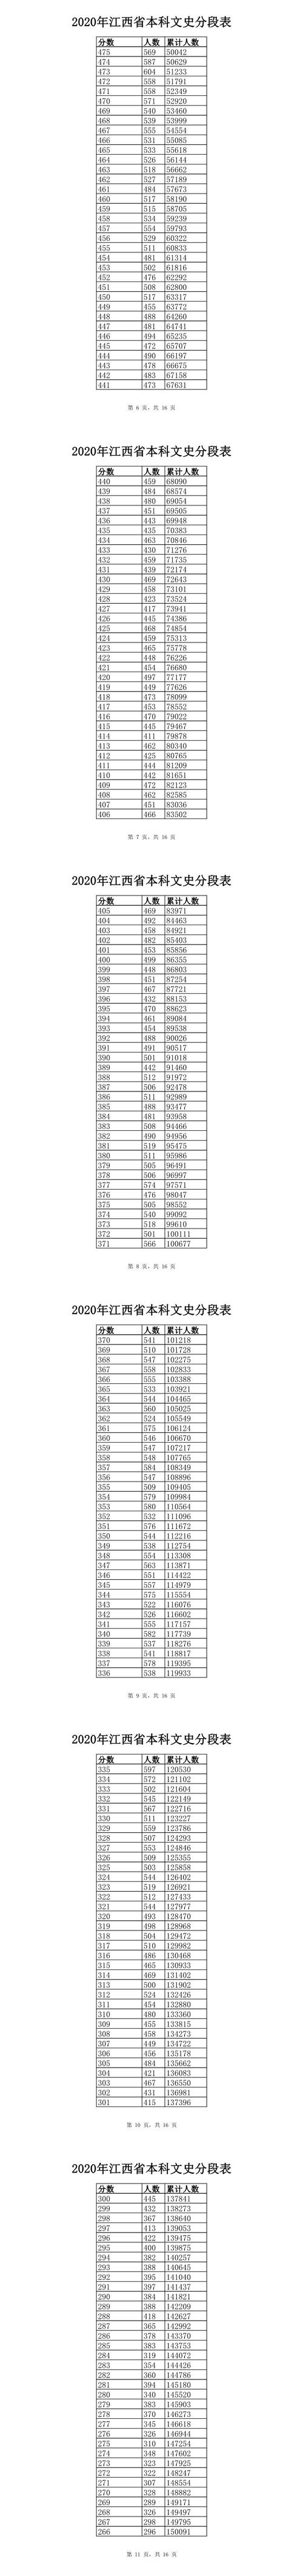 2017江西高考分数文科（2017江西高考文科一分一段表）